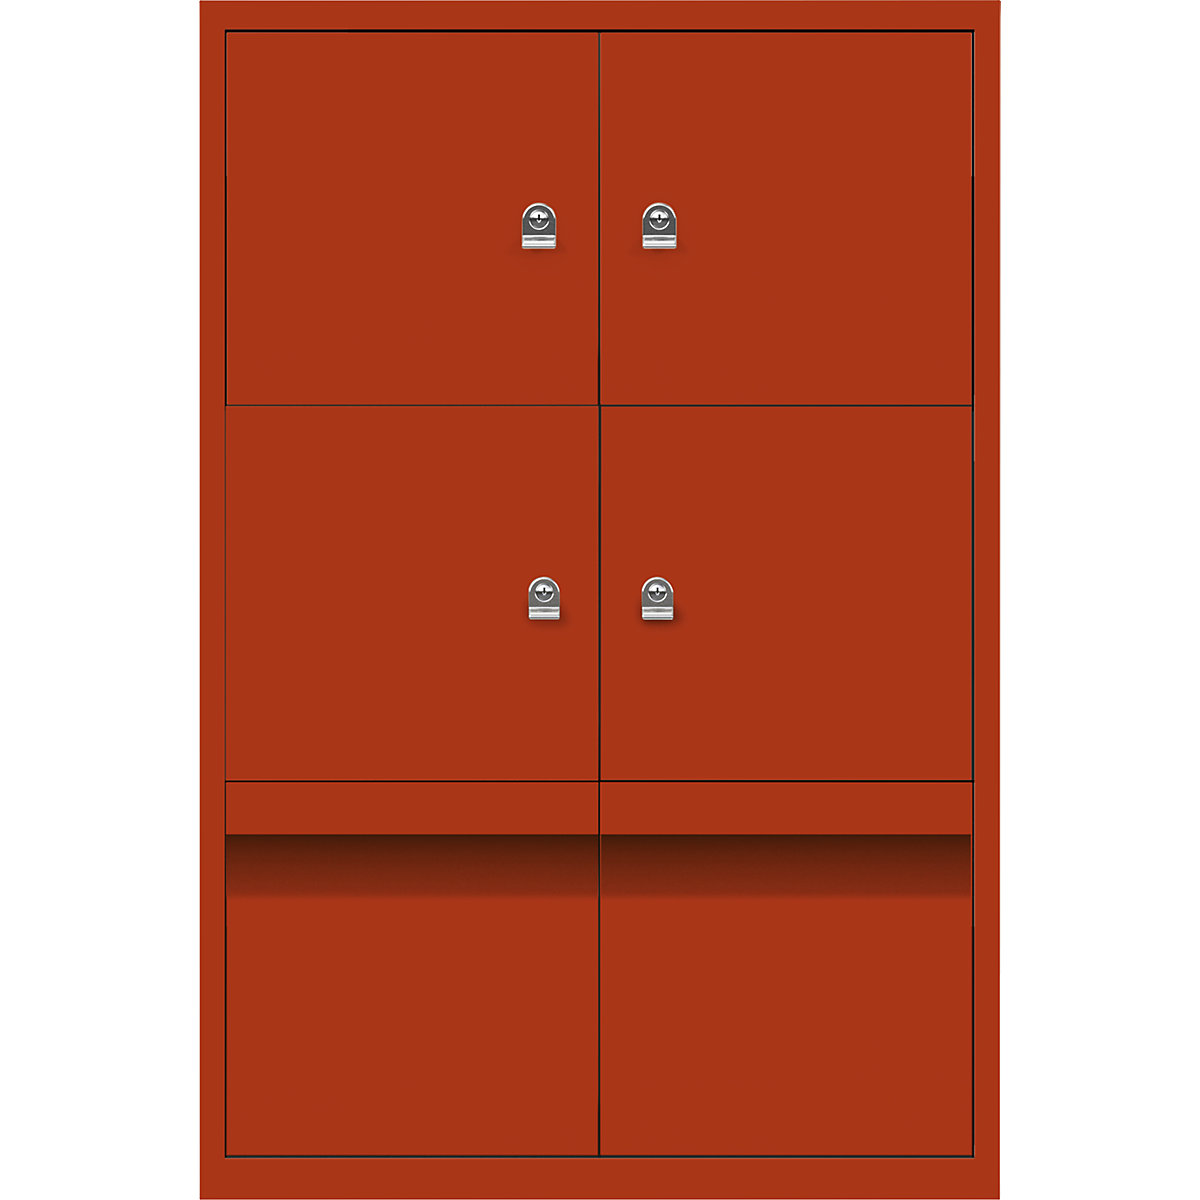 Ormar LateralFile™ Lodge – BISLEY, s 4 pretinca sa zaključavanjem i 2 ladice, visina po 375 mm, u sevilja crvenoj boji-8